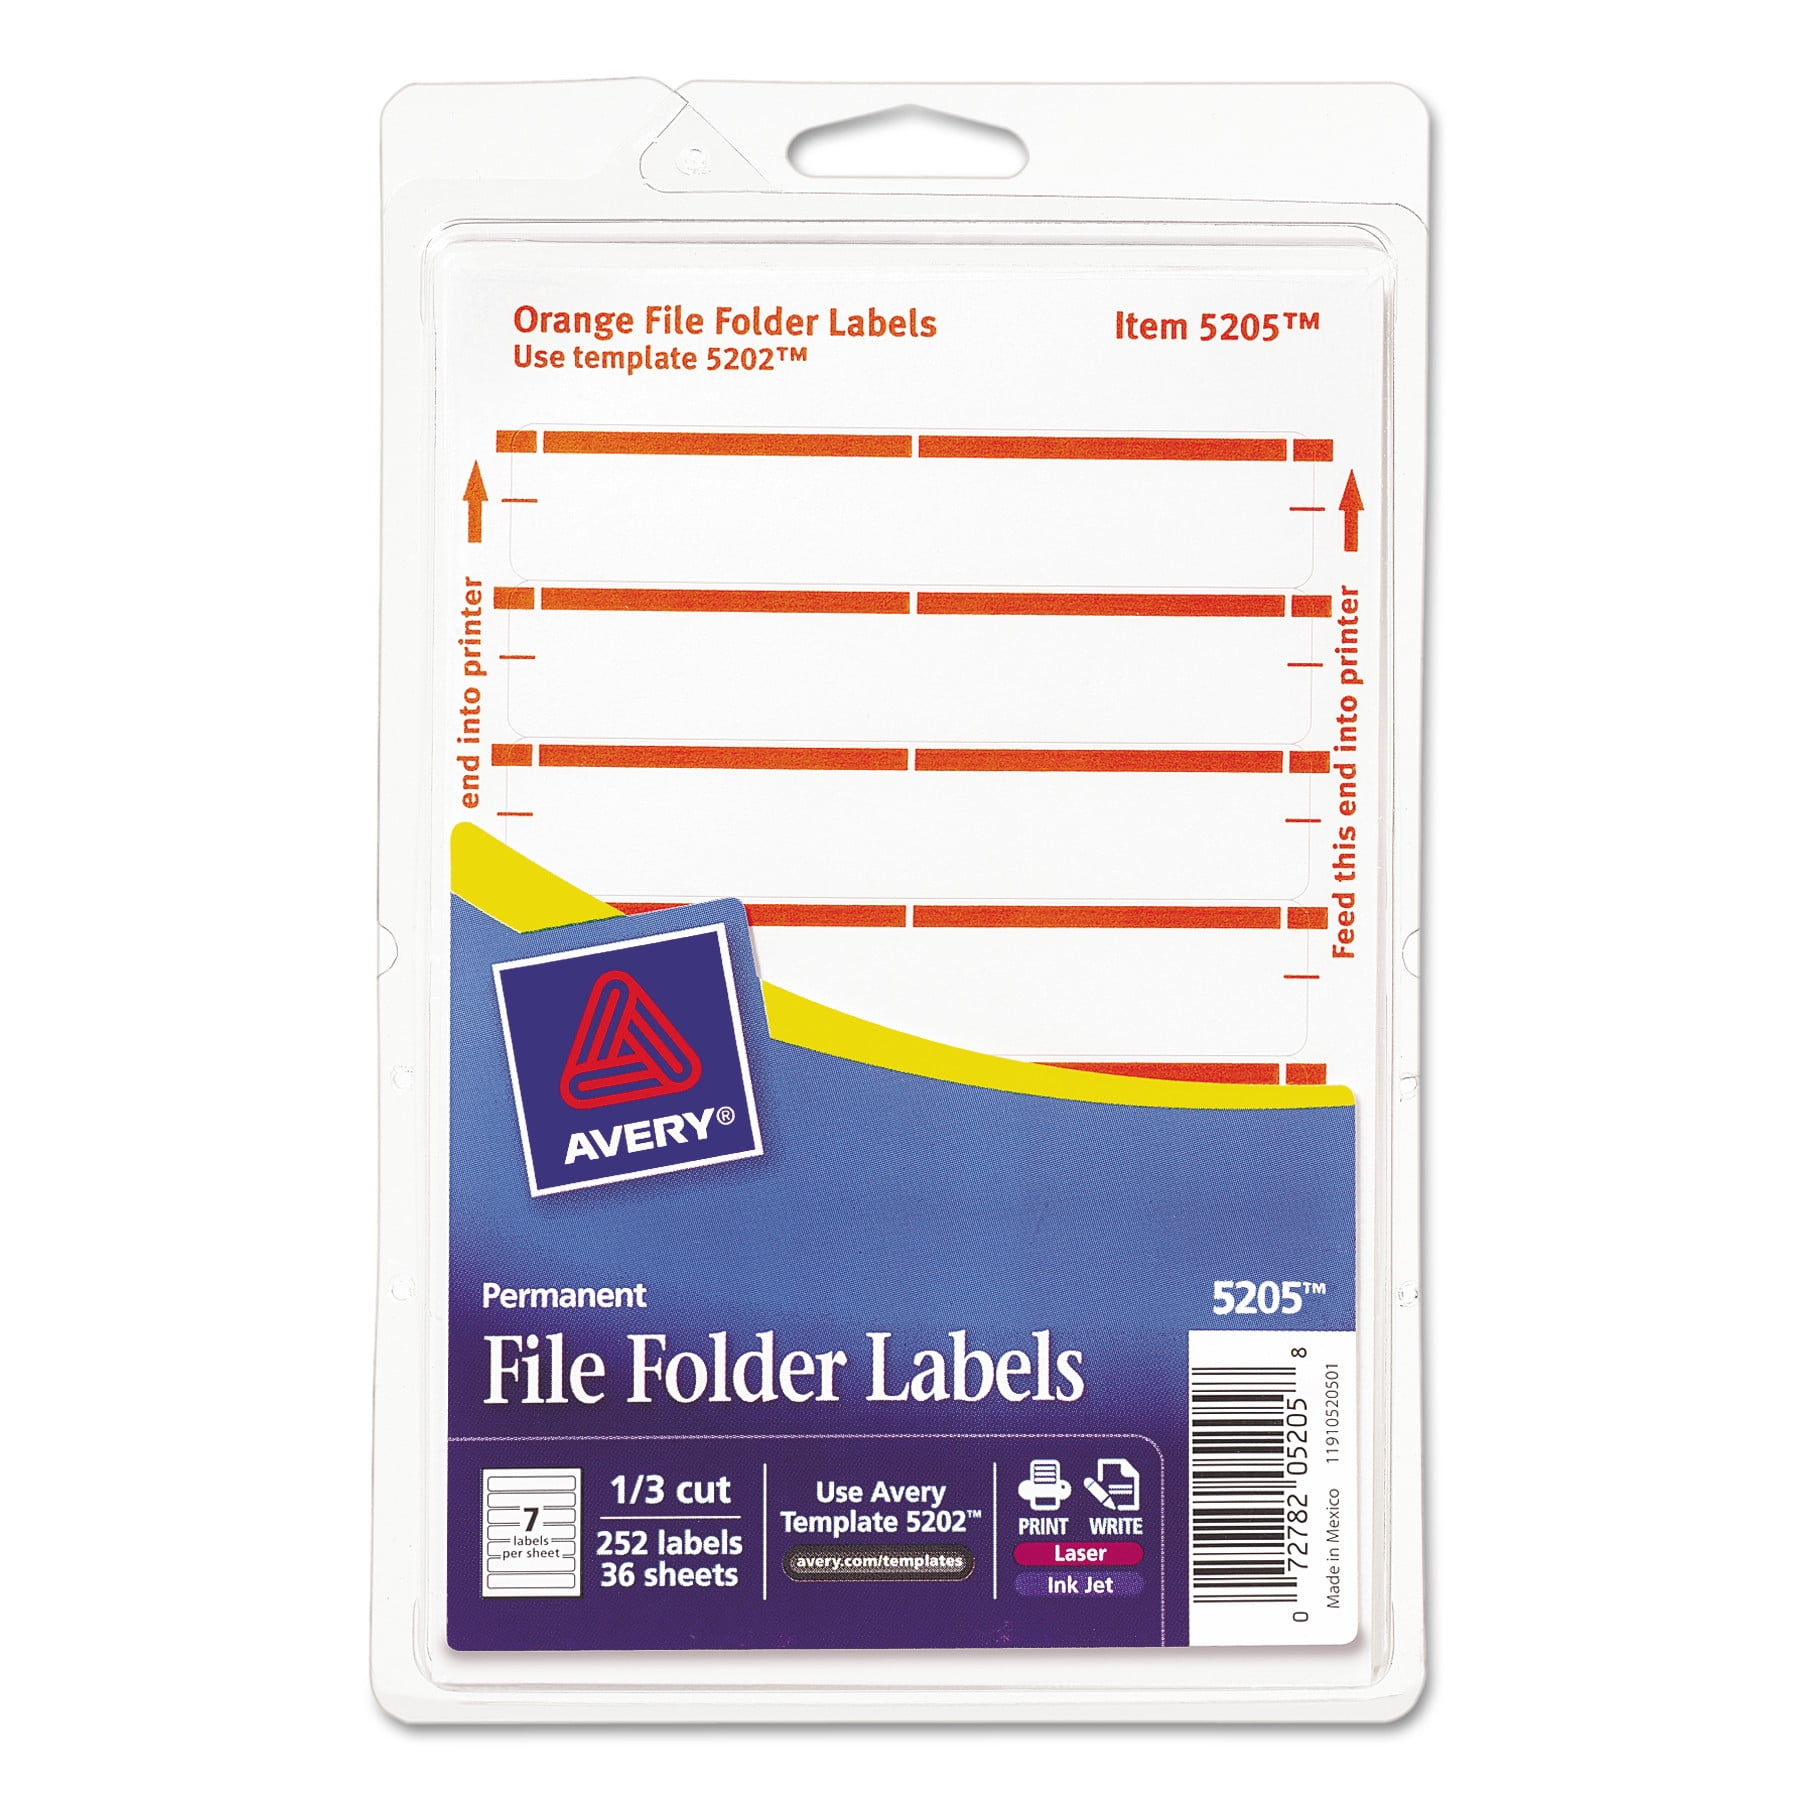 Этикетка для папки регистратора. File folder Labels. Маркам биркам